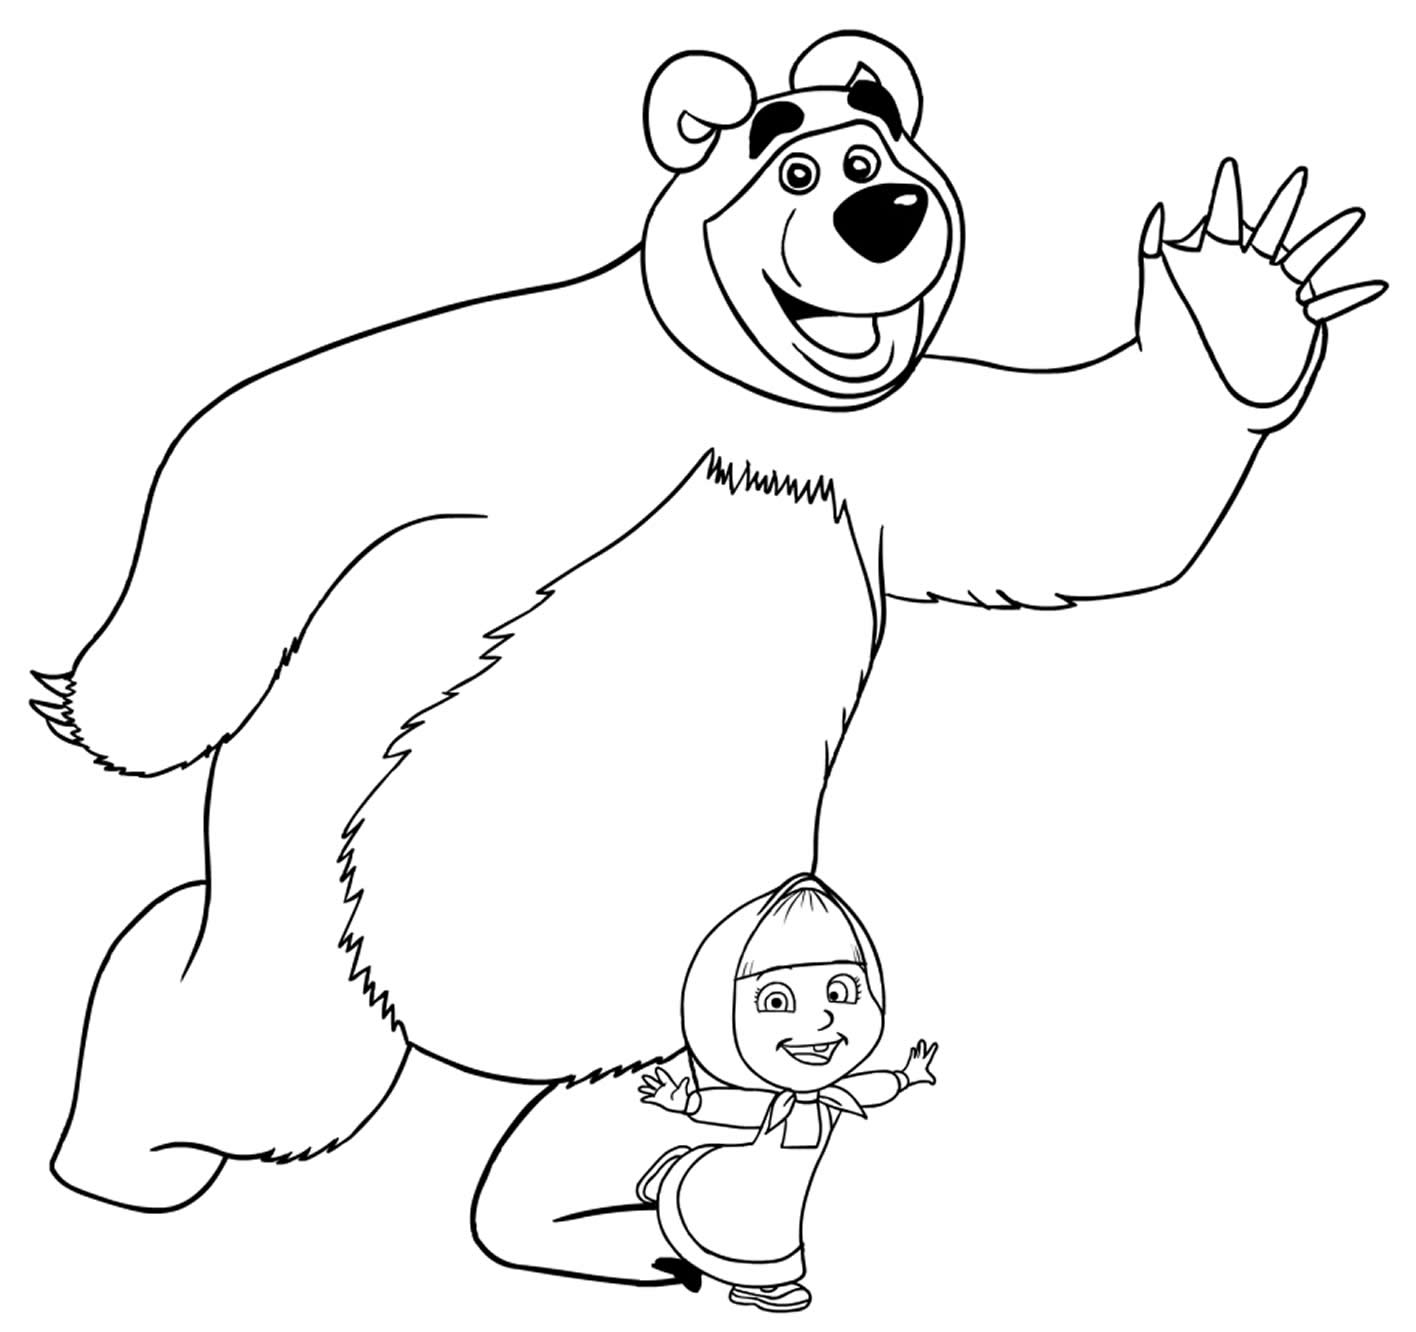 Миша из мультика Маша и медведь раскраска